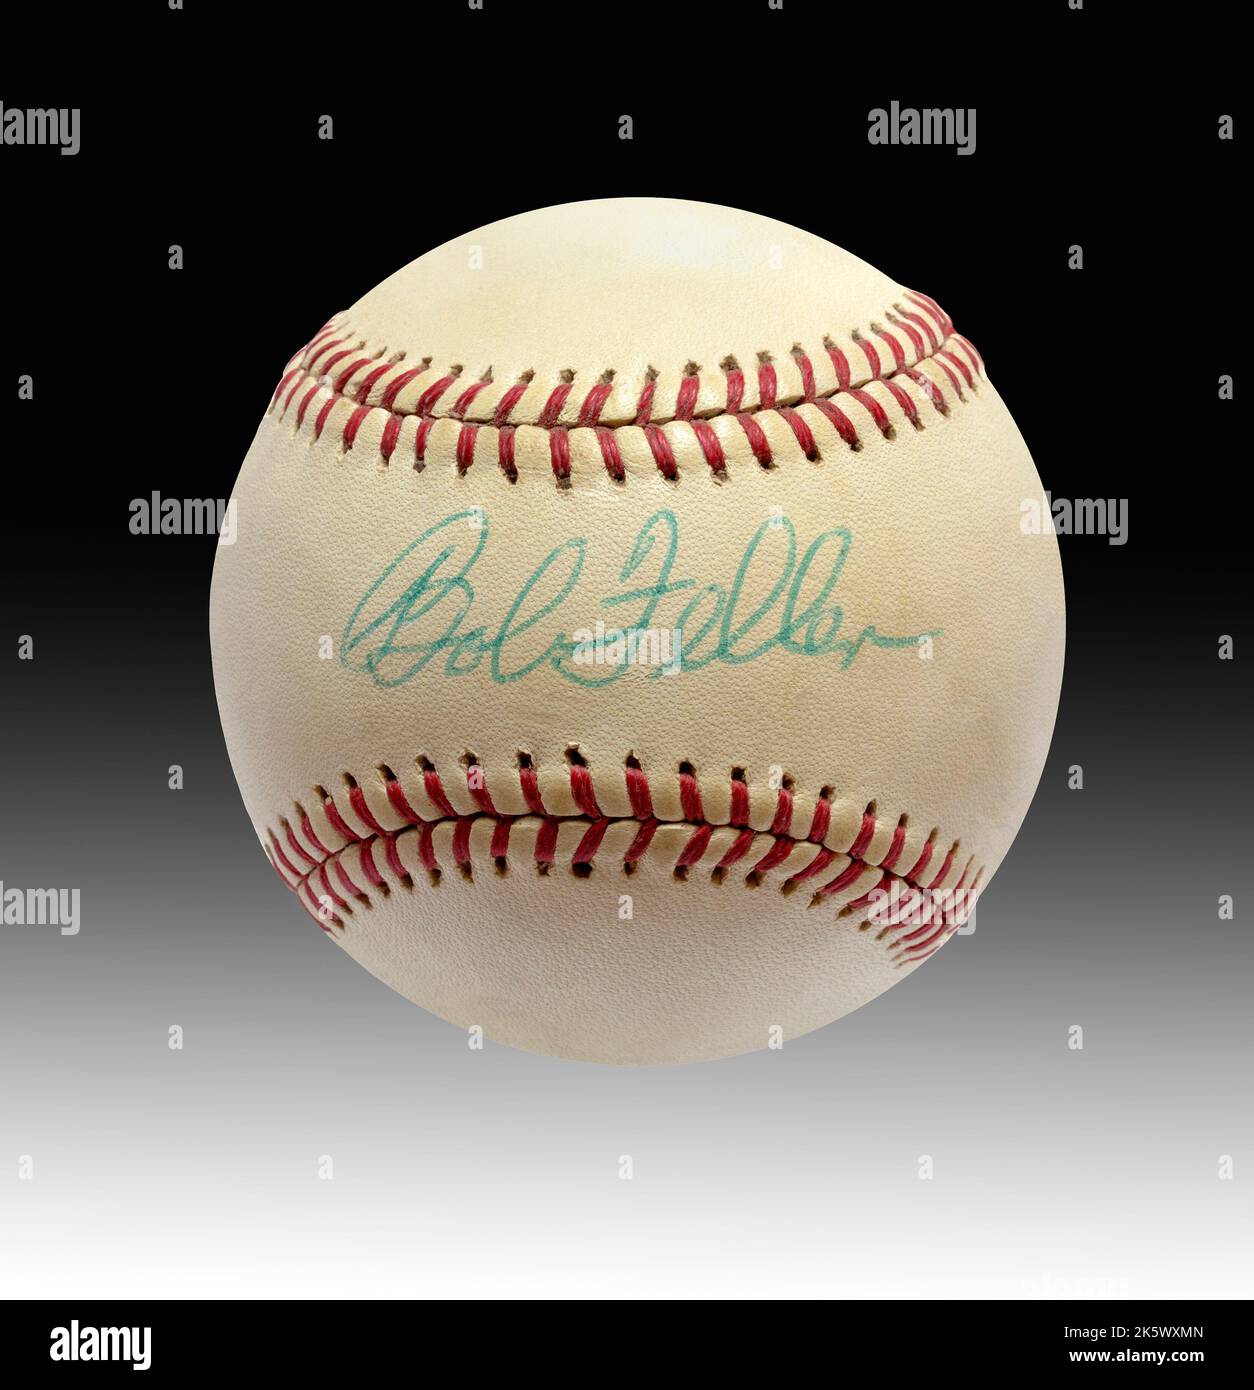 Uno storico baseball autografato firmato dalla Hall of Fame Cleveland Indians Pitcher Bob Feller Foto Stock